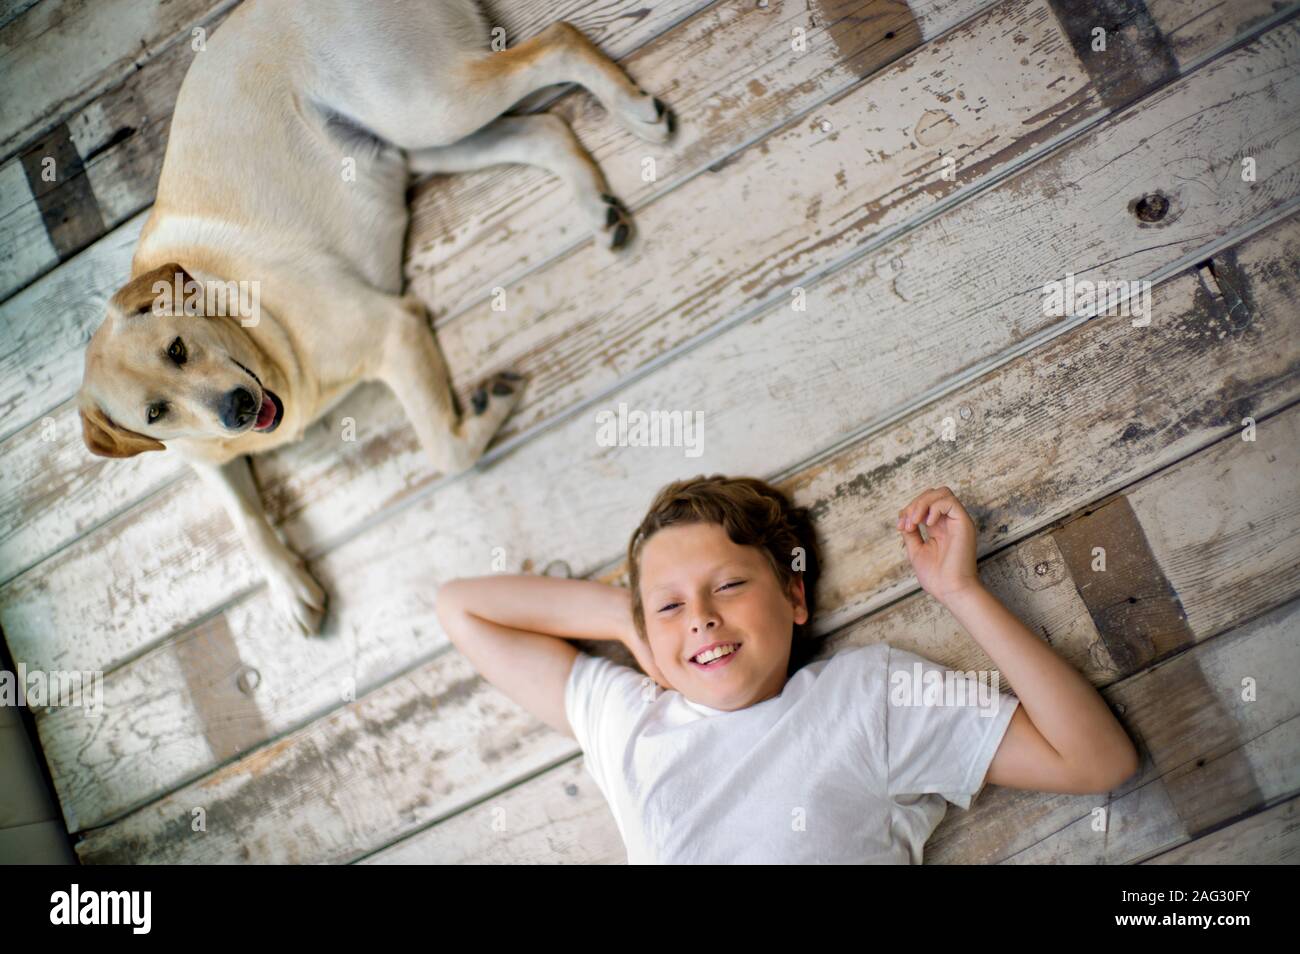 Portrait of a smiling students avec les mains derrière sa tête sur un plancher de bois franc à côté de son chien. Banque D'Images